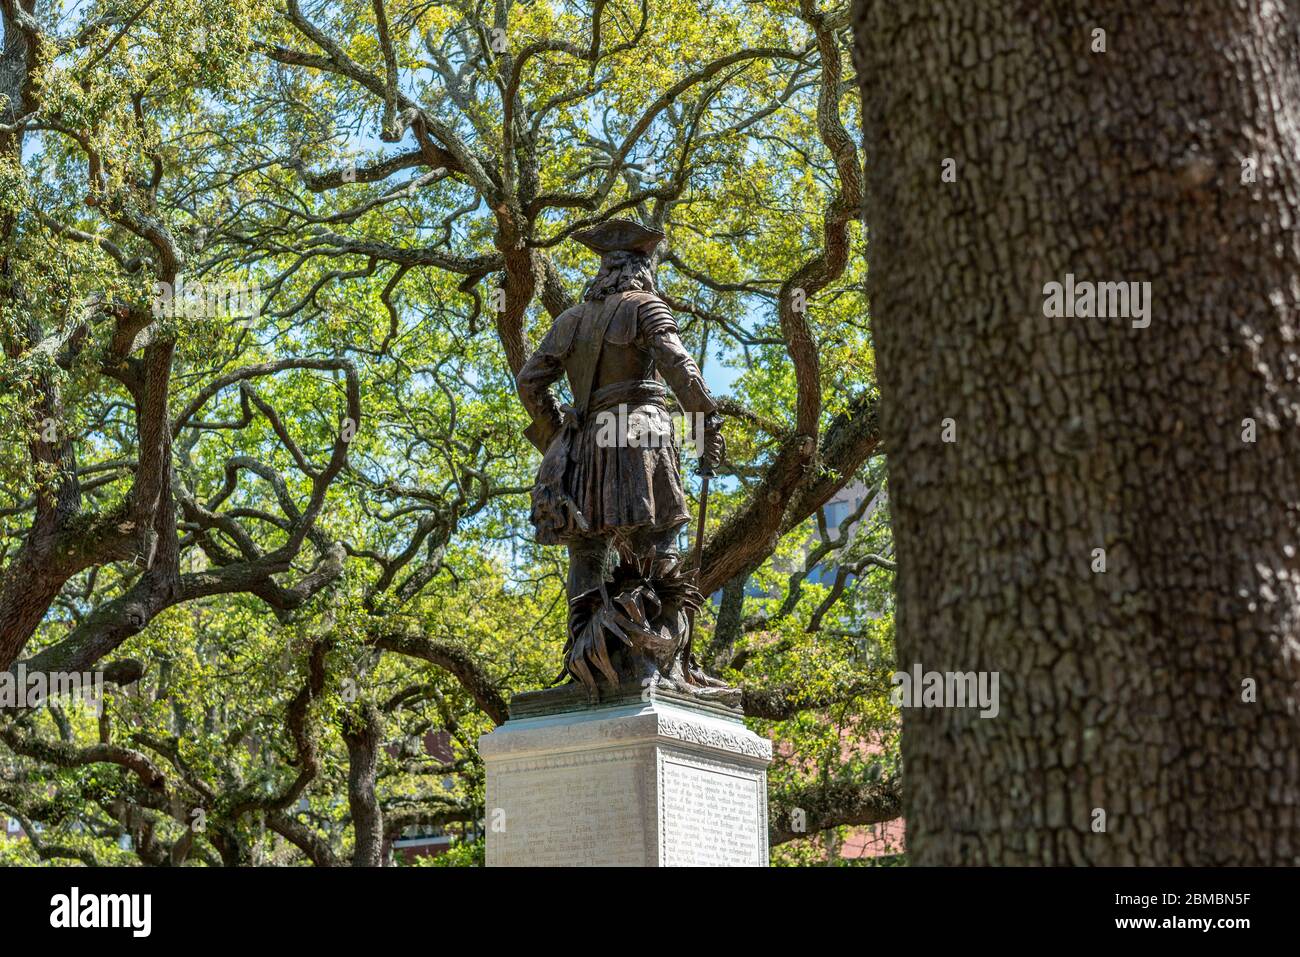 Una estatua de James Oglethorpe reside en Savannah, la plaza Chippewa llena de roble de Georgia. Foto de stock